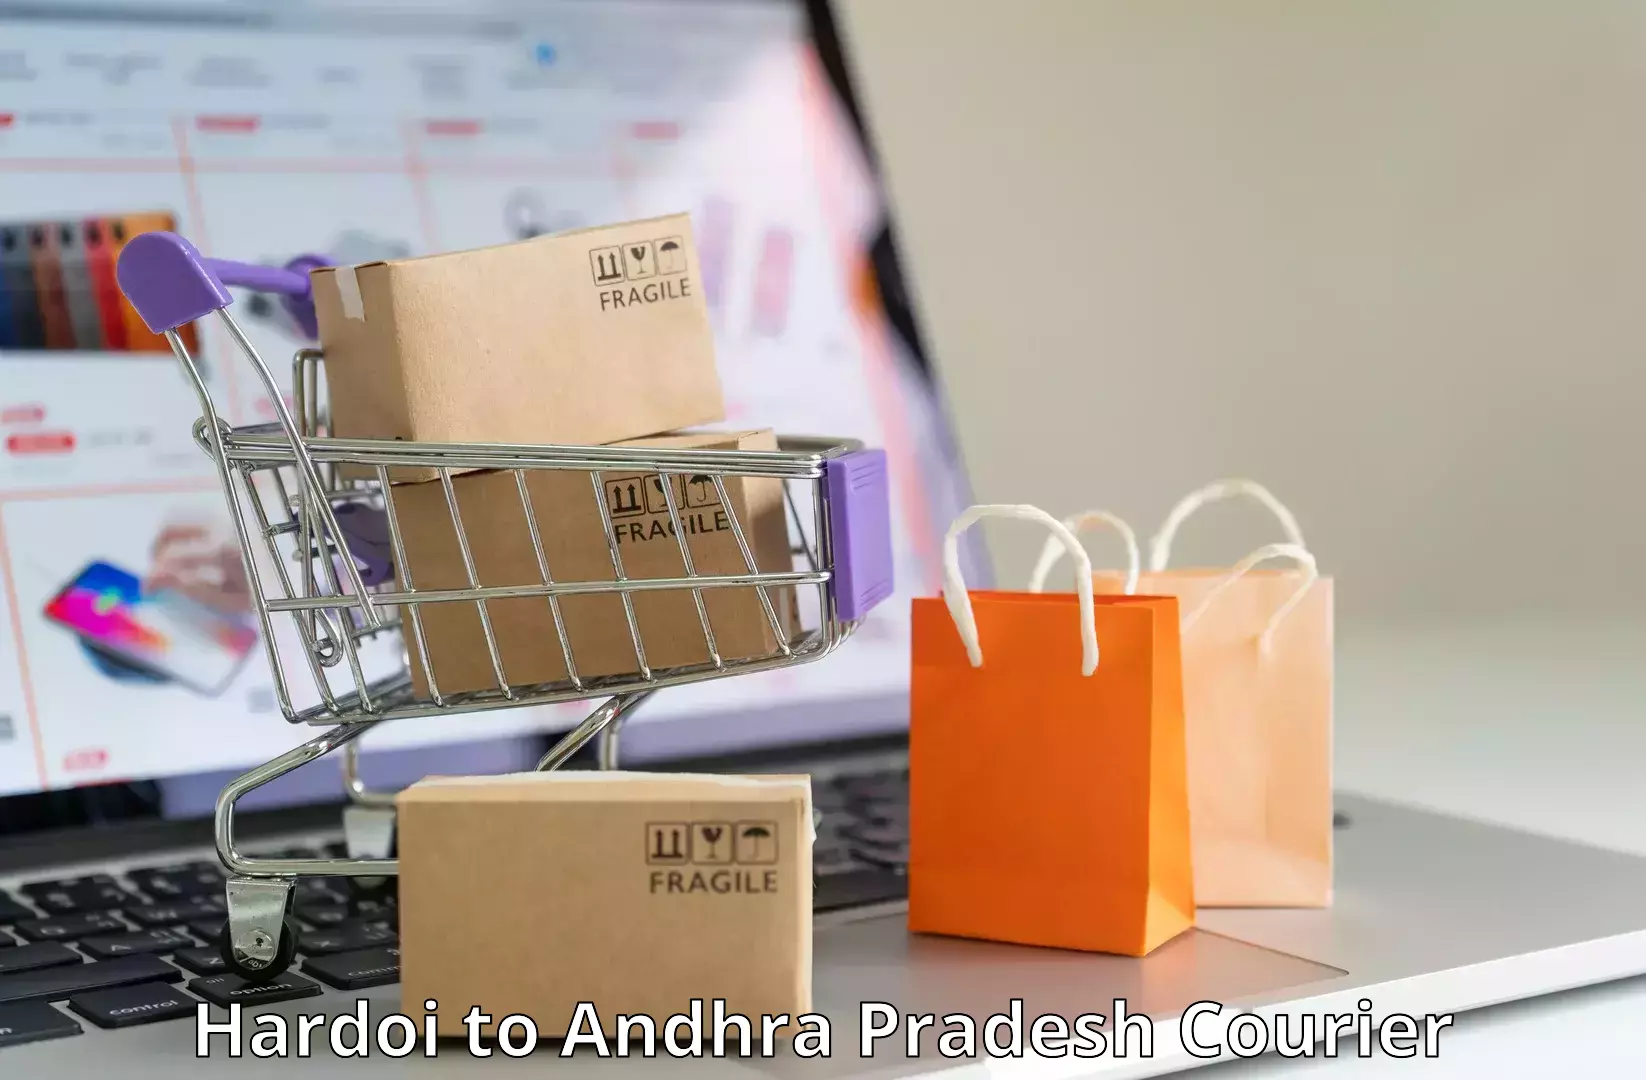 Online package tracking Hardoi to Andhra Pradesh